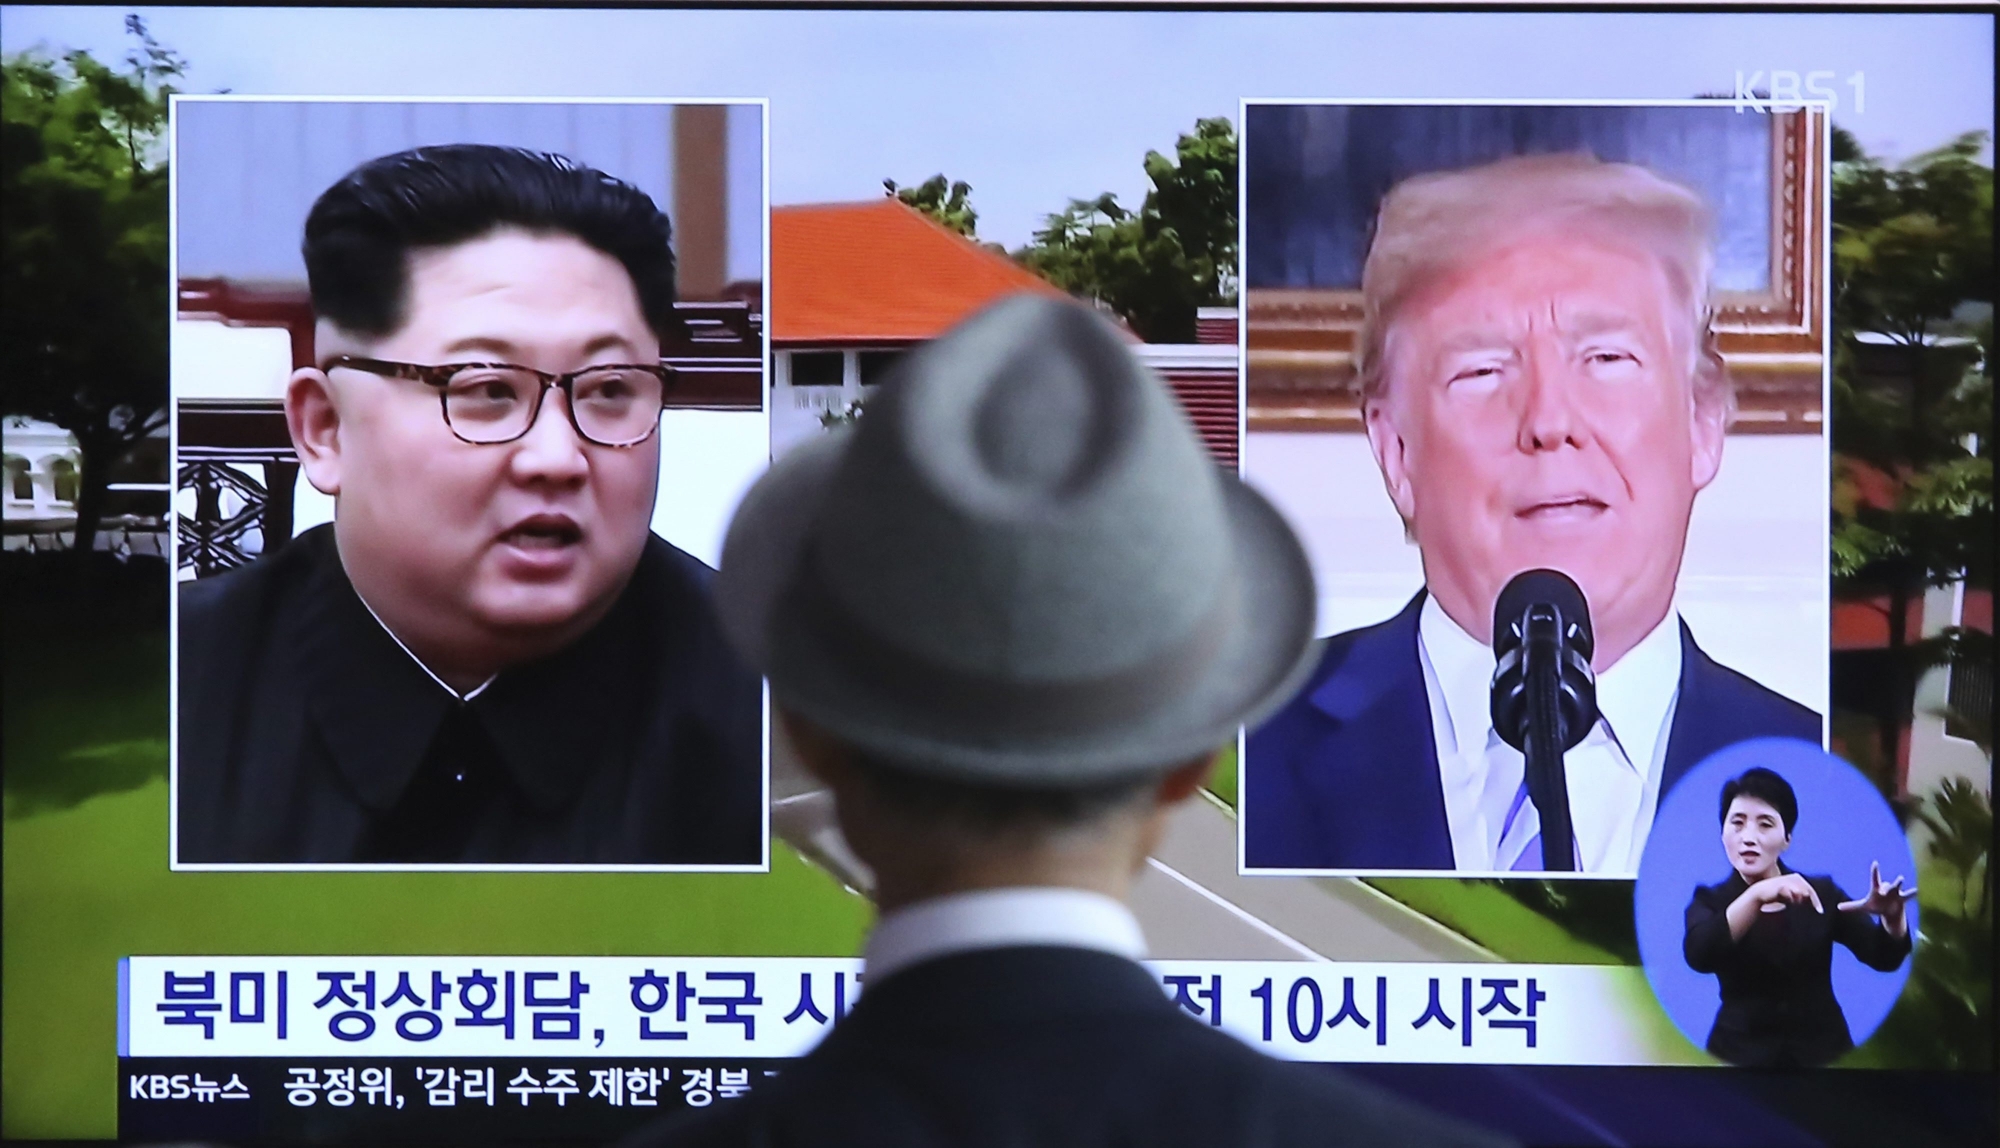 Séoul, quelques heures avant le sommet Kim Jong-un - Trump, un homme regarde un reportage télévisé.